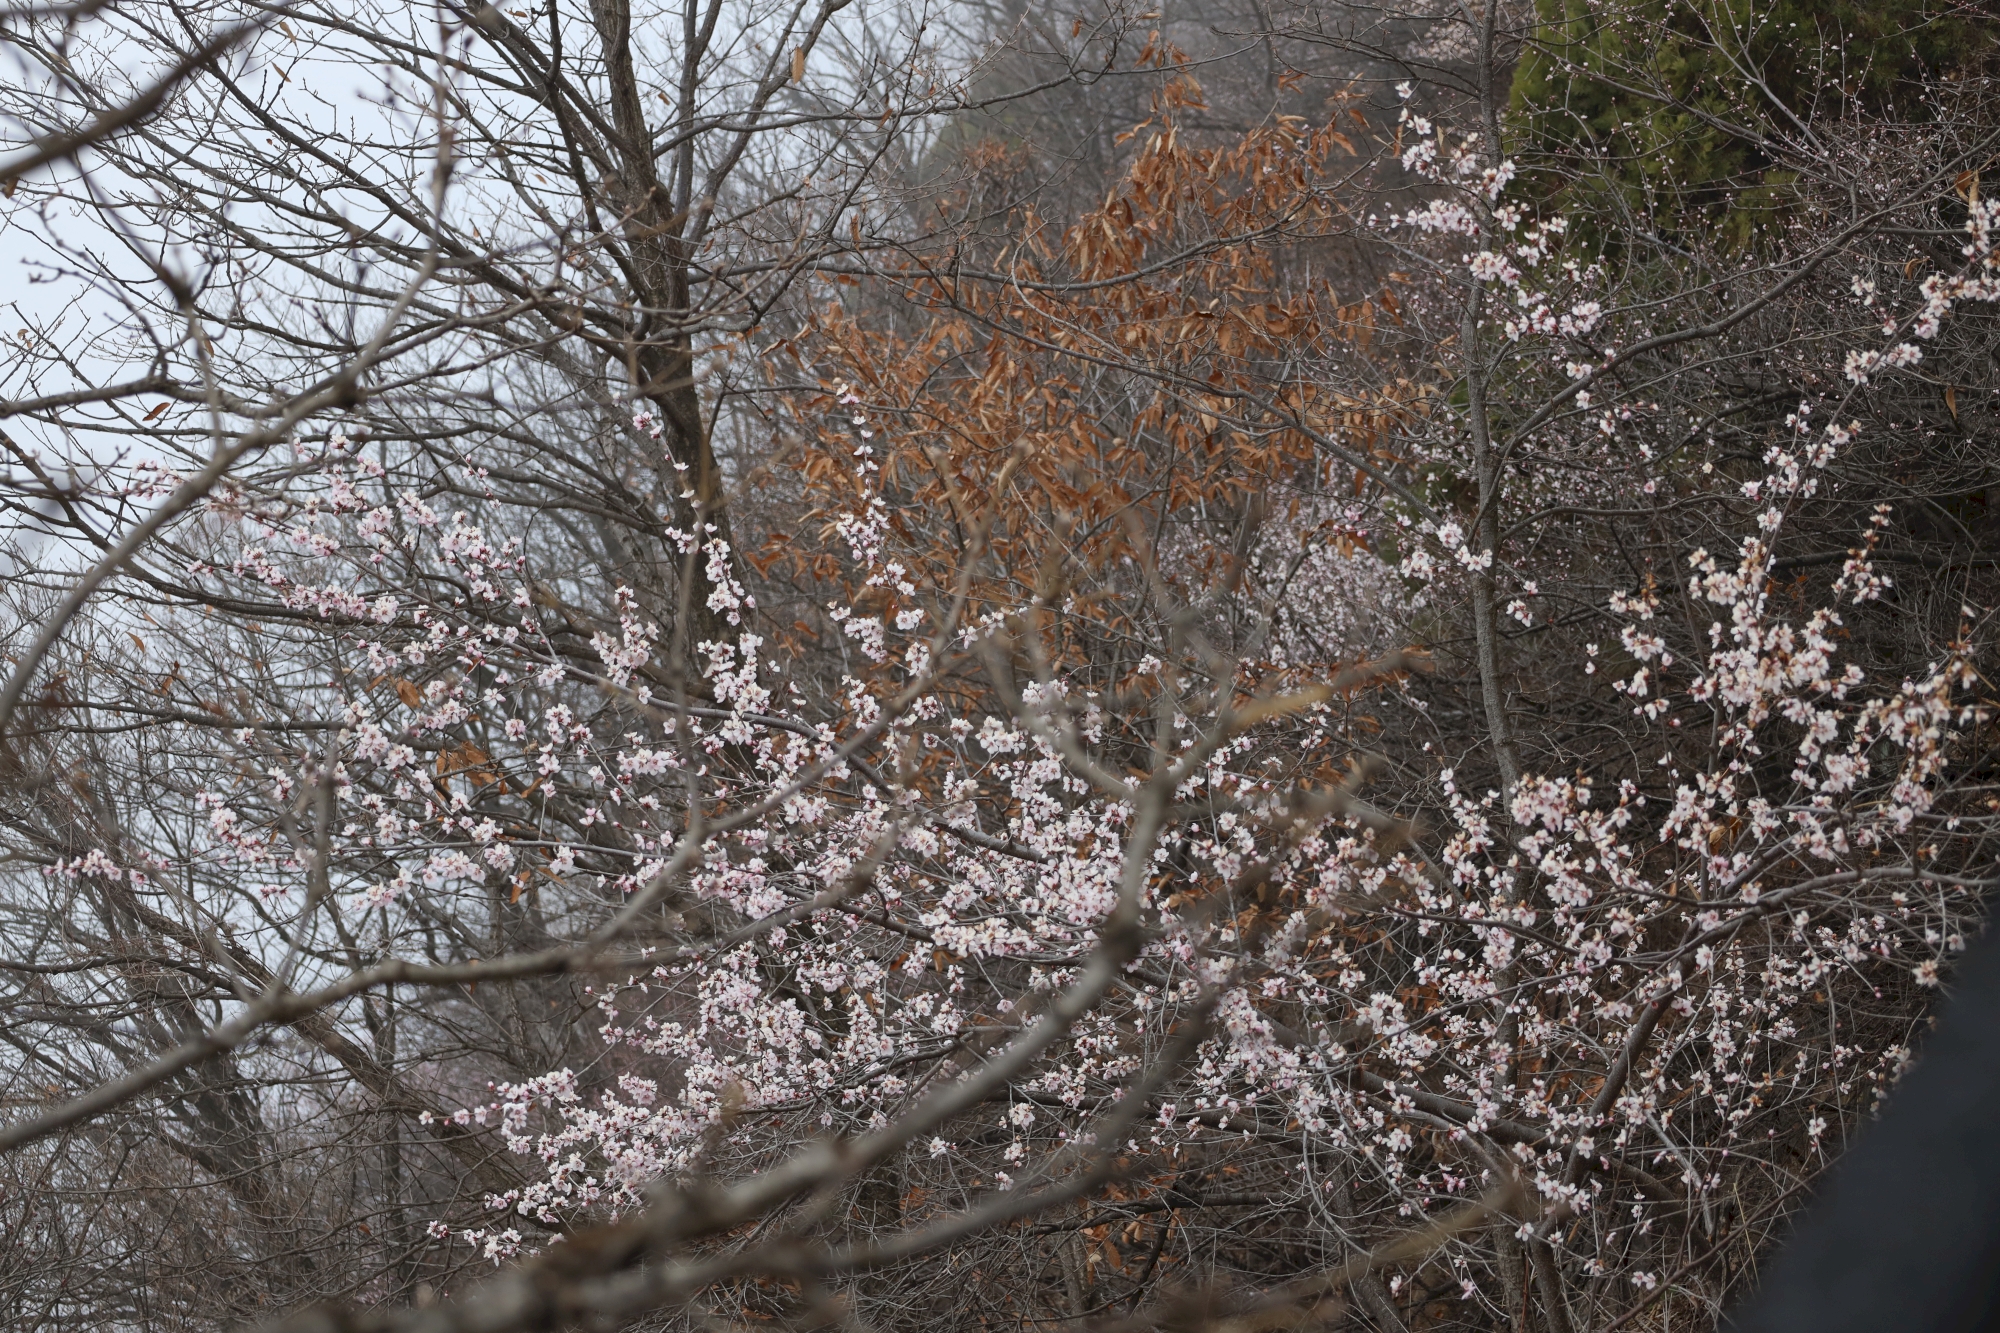 新乡的山区的春天在哪里？你知道吗？来回龙天界山赏桃花